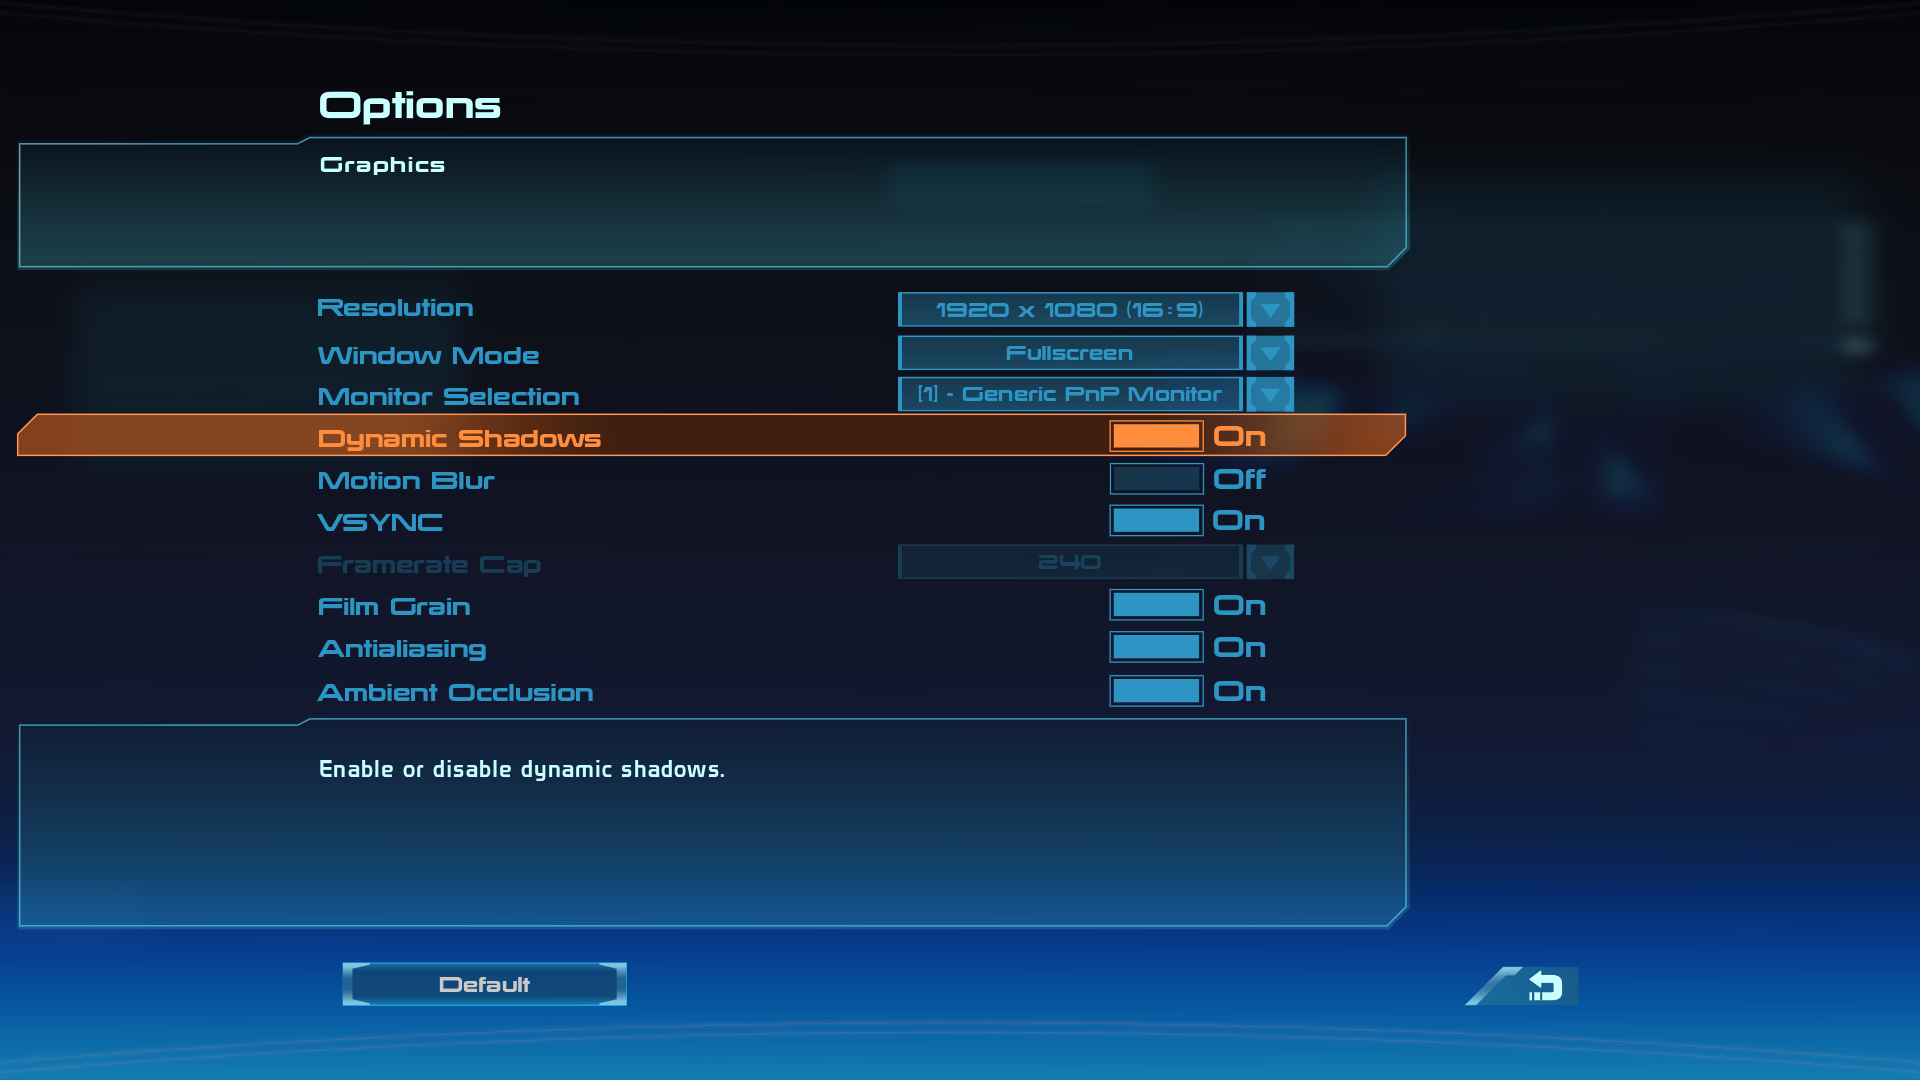 Mass Effect 3 Screenshot 3